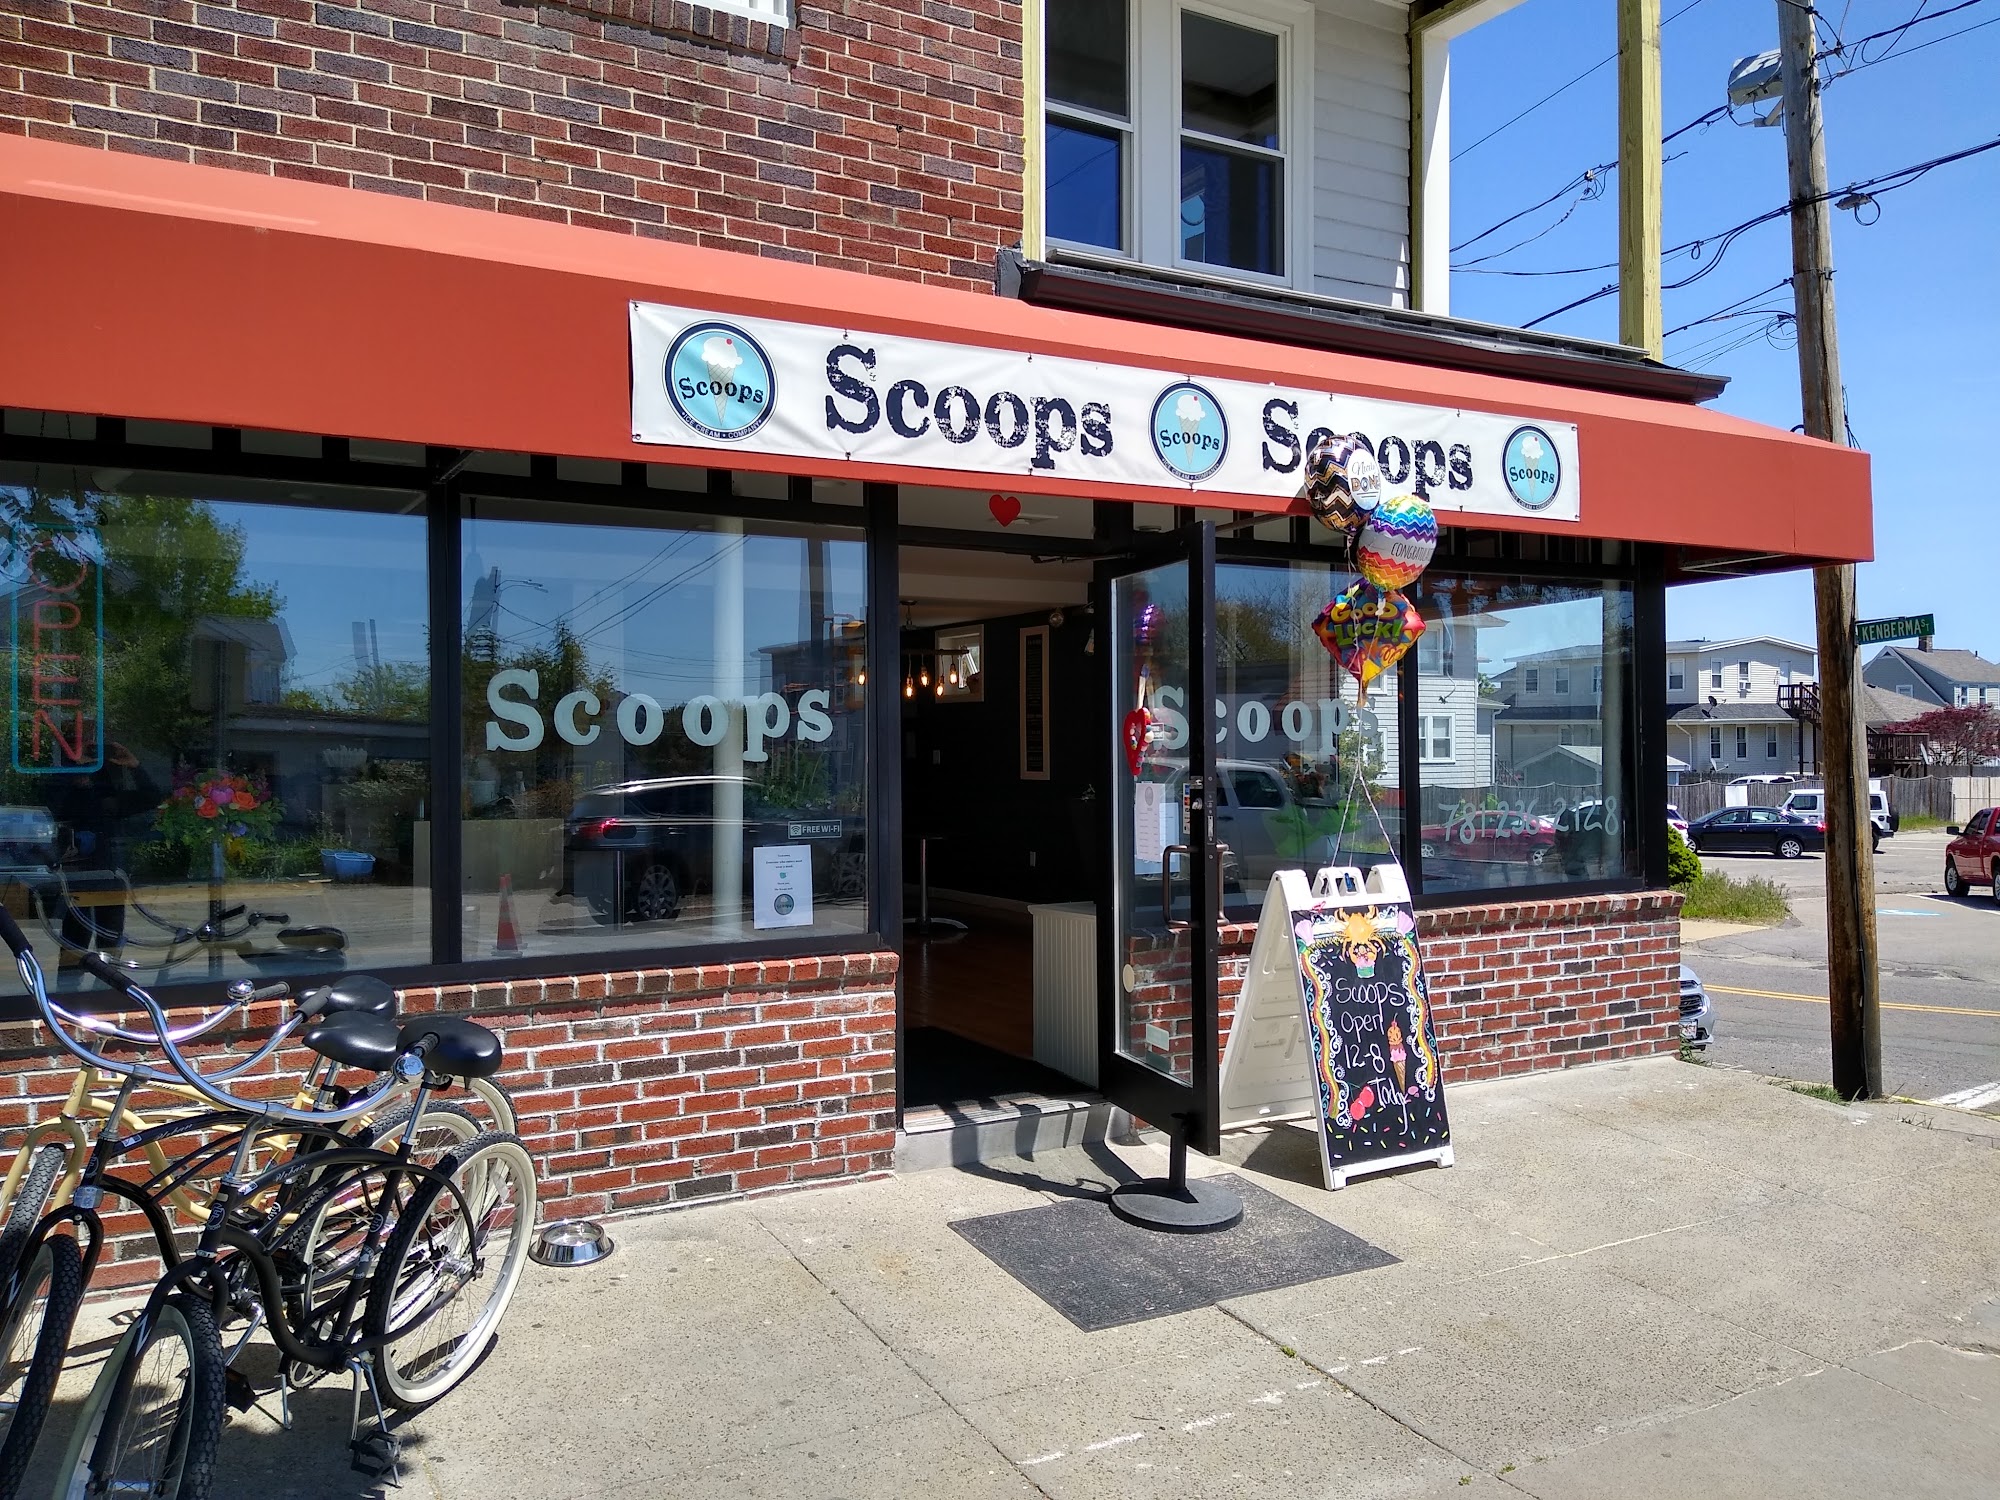 Scoops Ice Cream Company